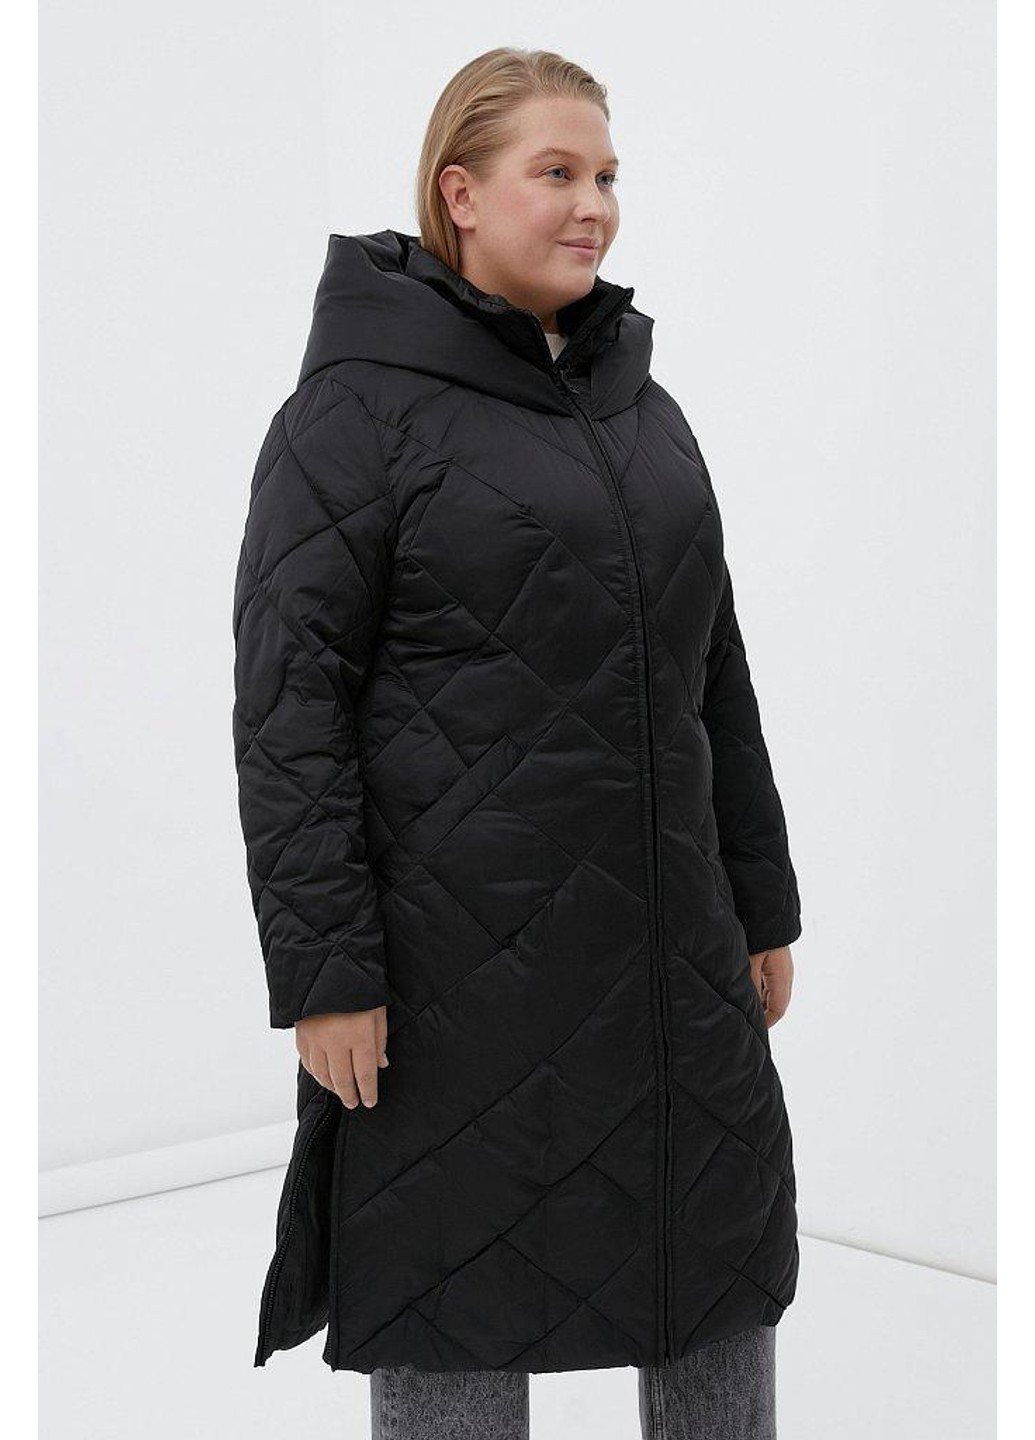 Черная зимняя куртка fwb160130-200 Finn Flare